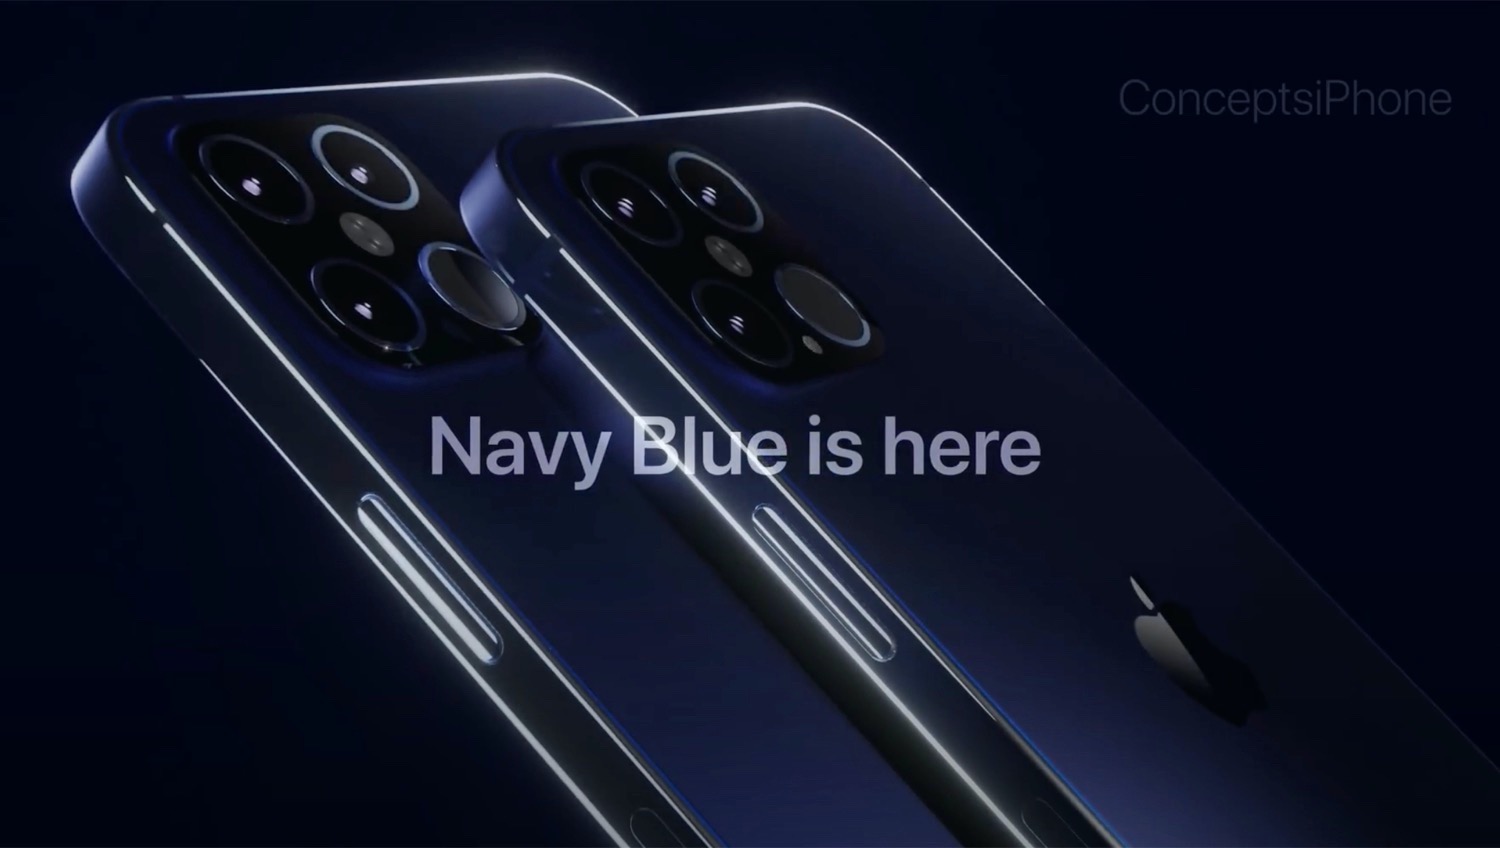 Ein Konzeptvideo Zeigt Ein Schickes Apple Iphone 12 Pro In Navy Blue Notebookcheck Com News